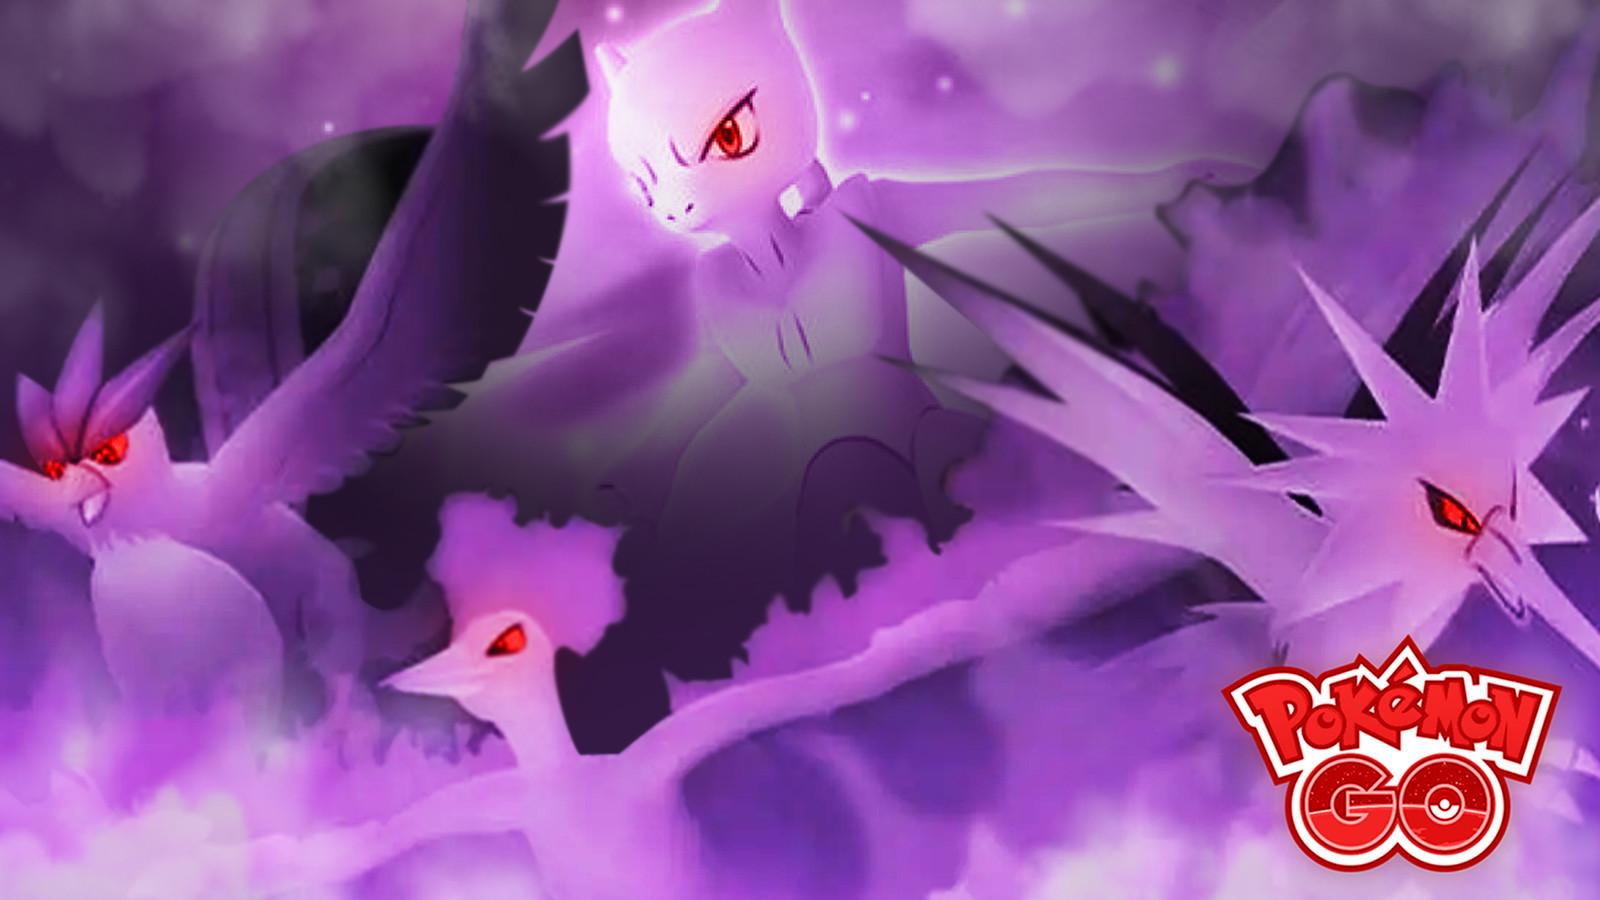 How to catch Shiny Shadow Mewtwo in Pokemon GO